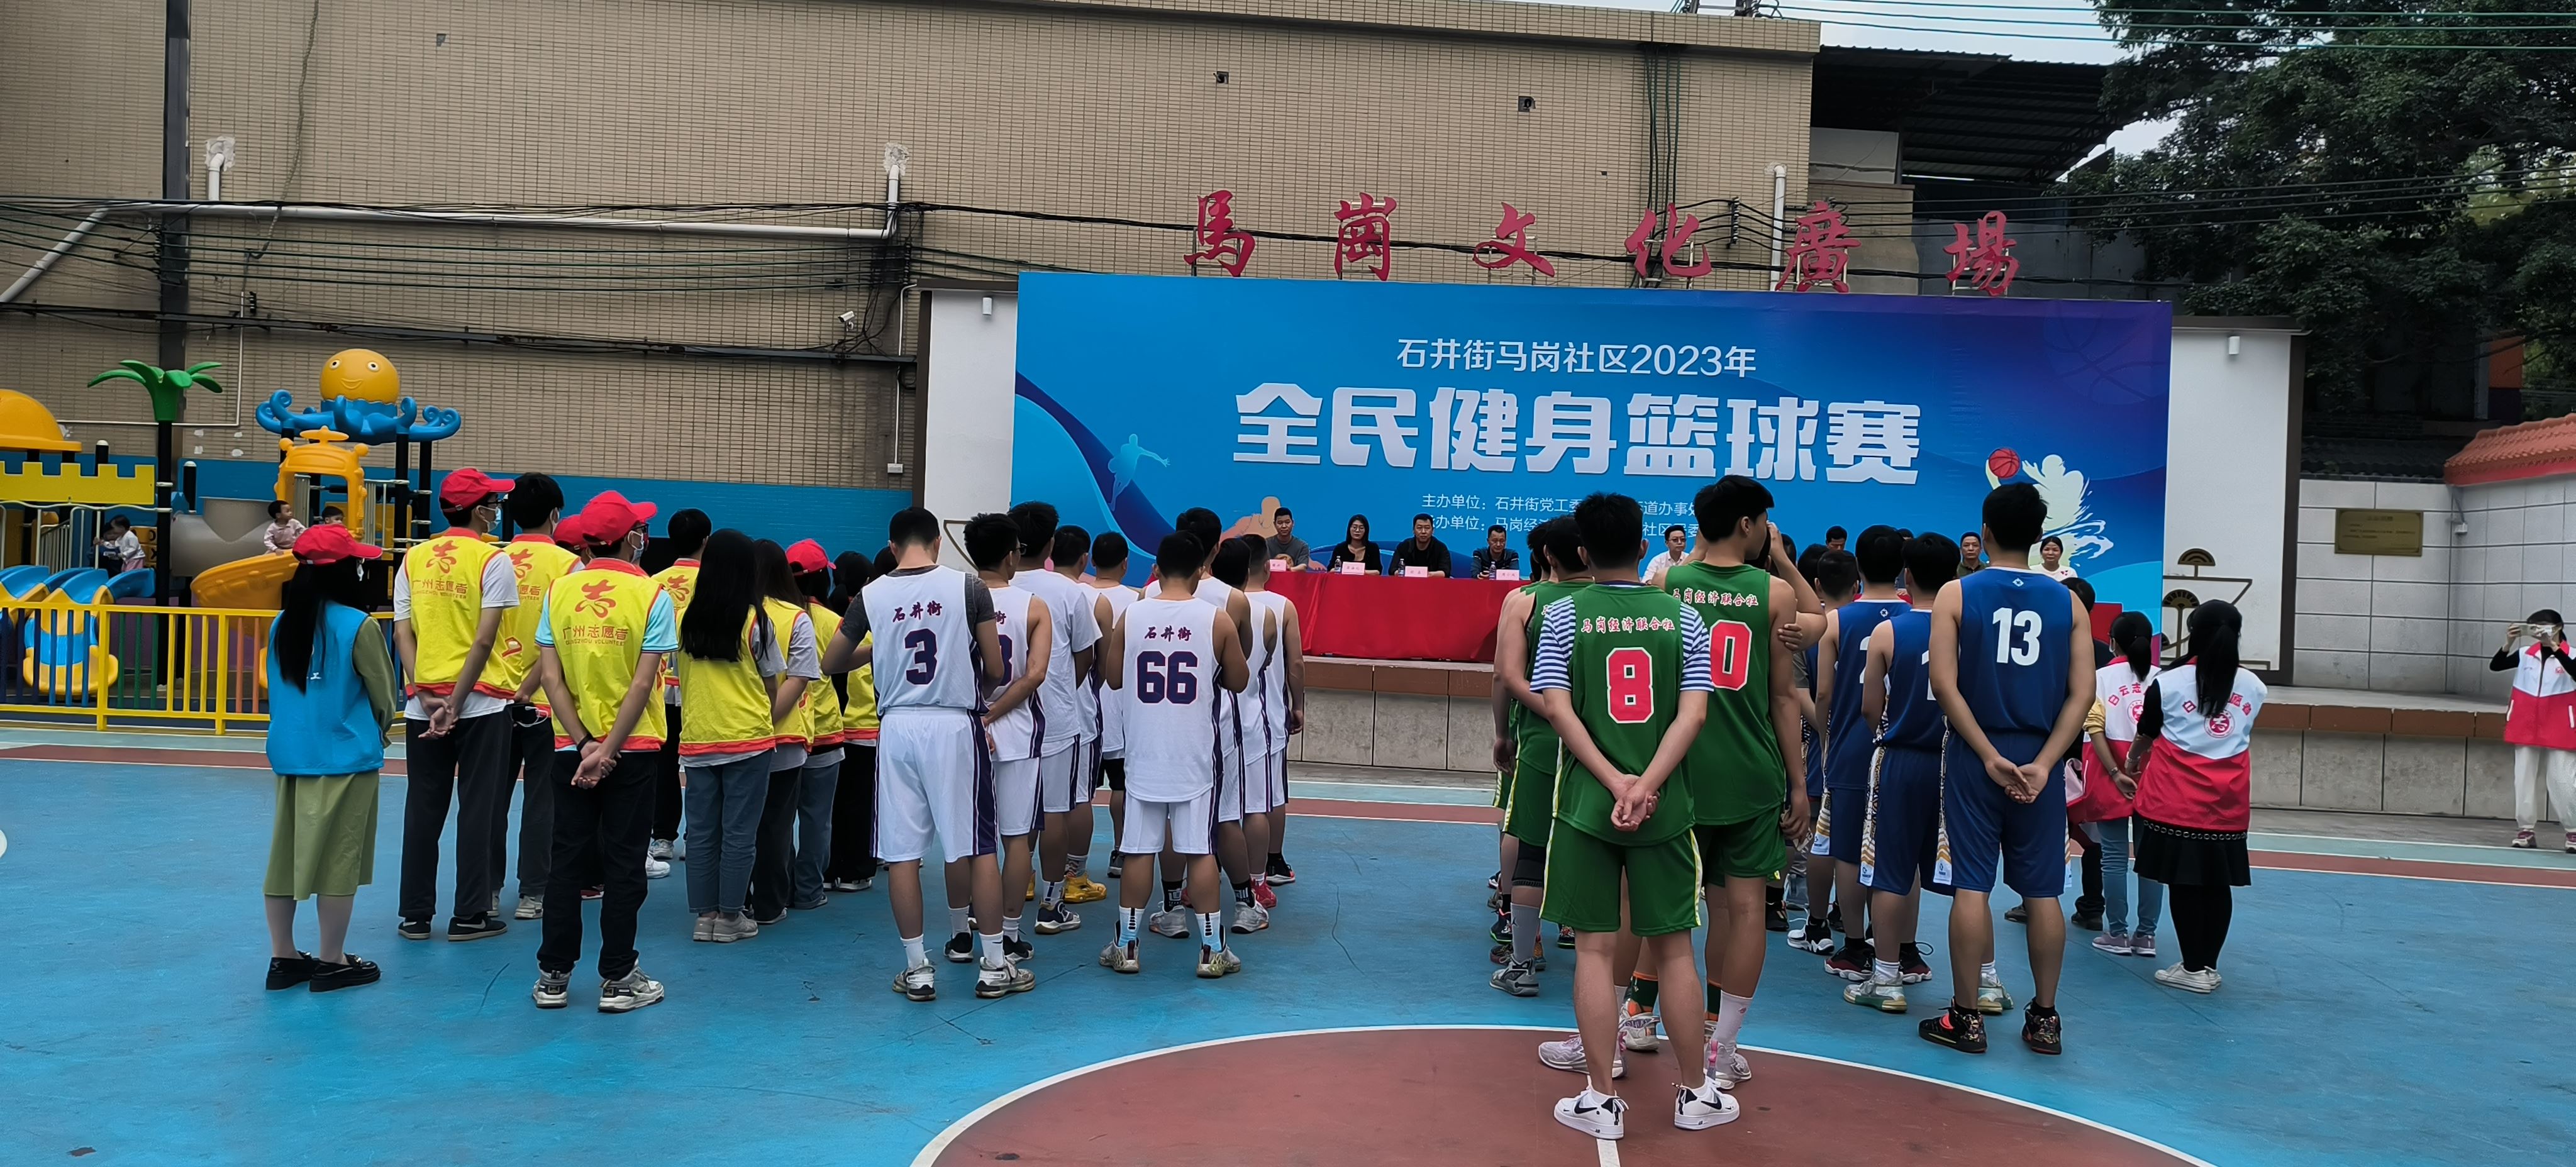 马岗社区2023年全民健身篮球赛